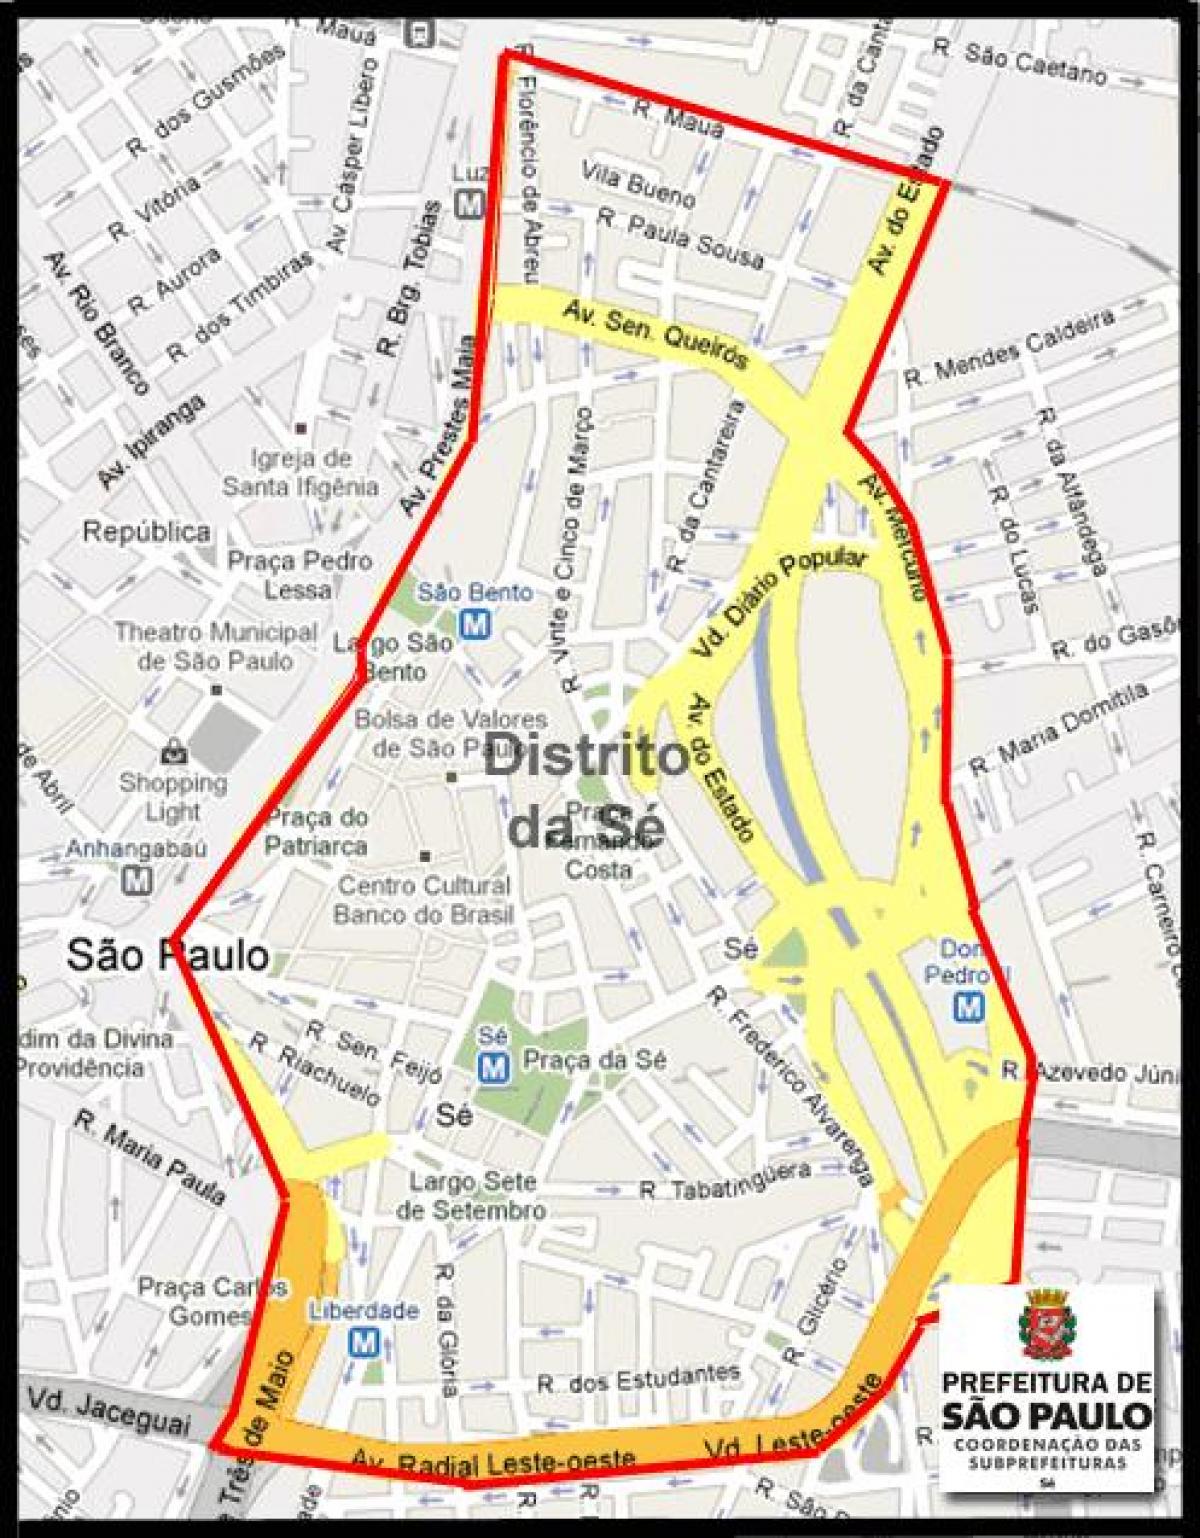 מפה של Sé סאו פאולו